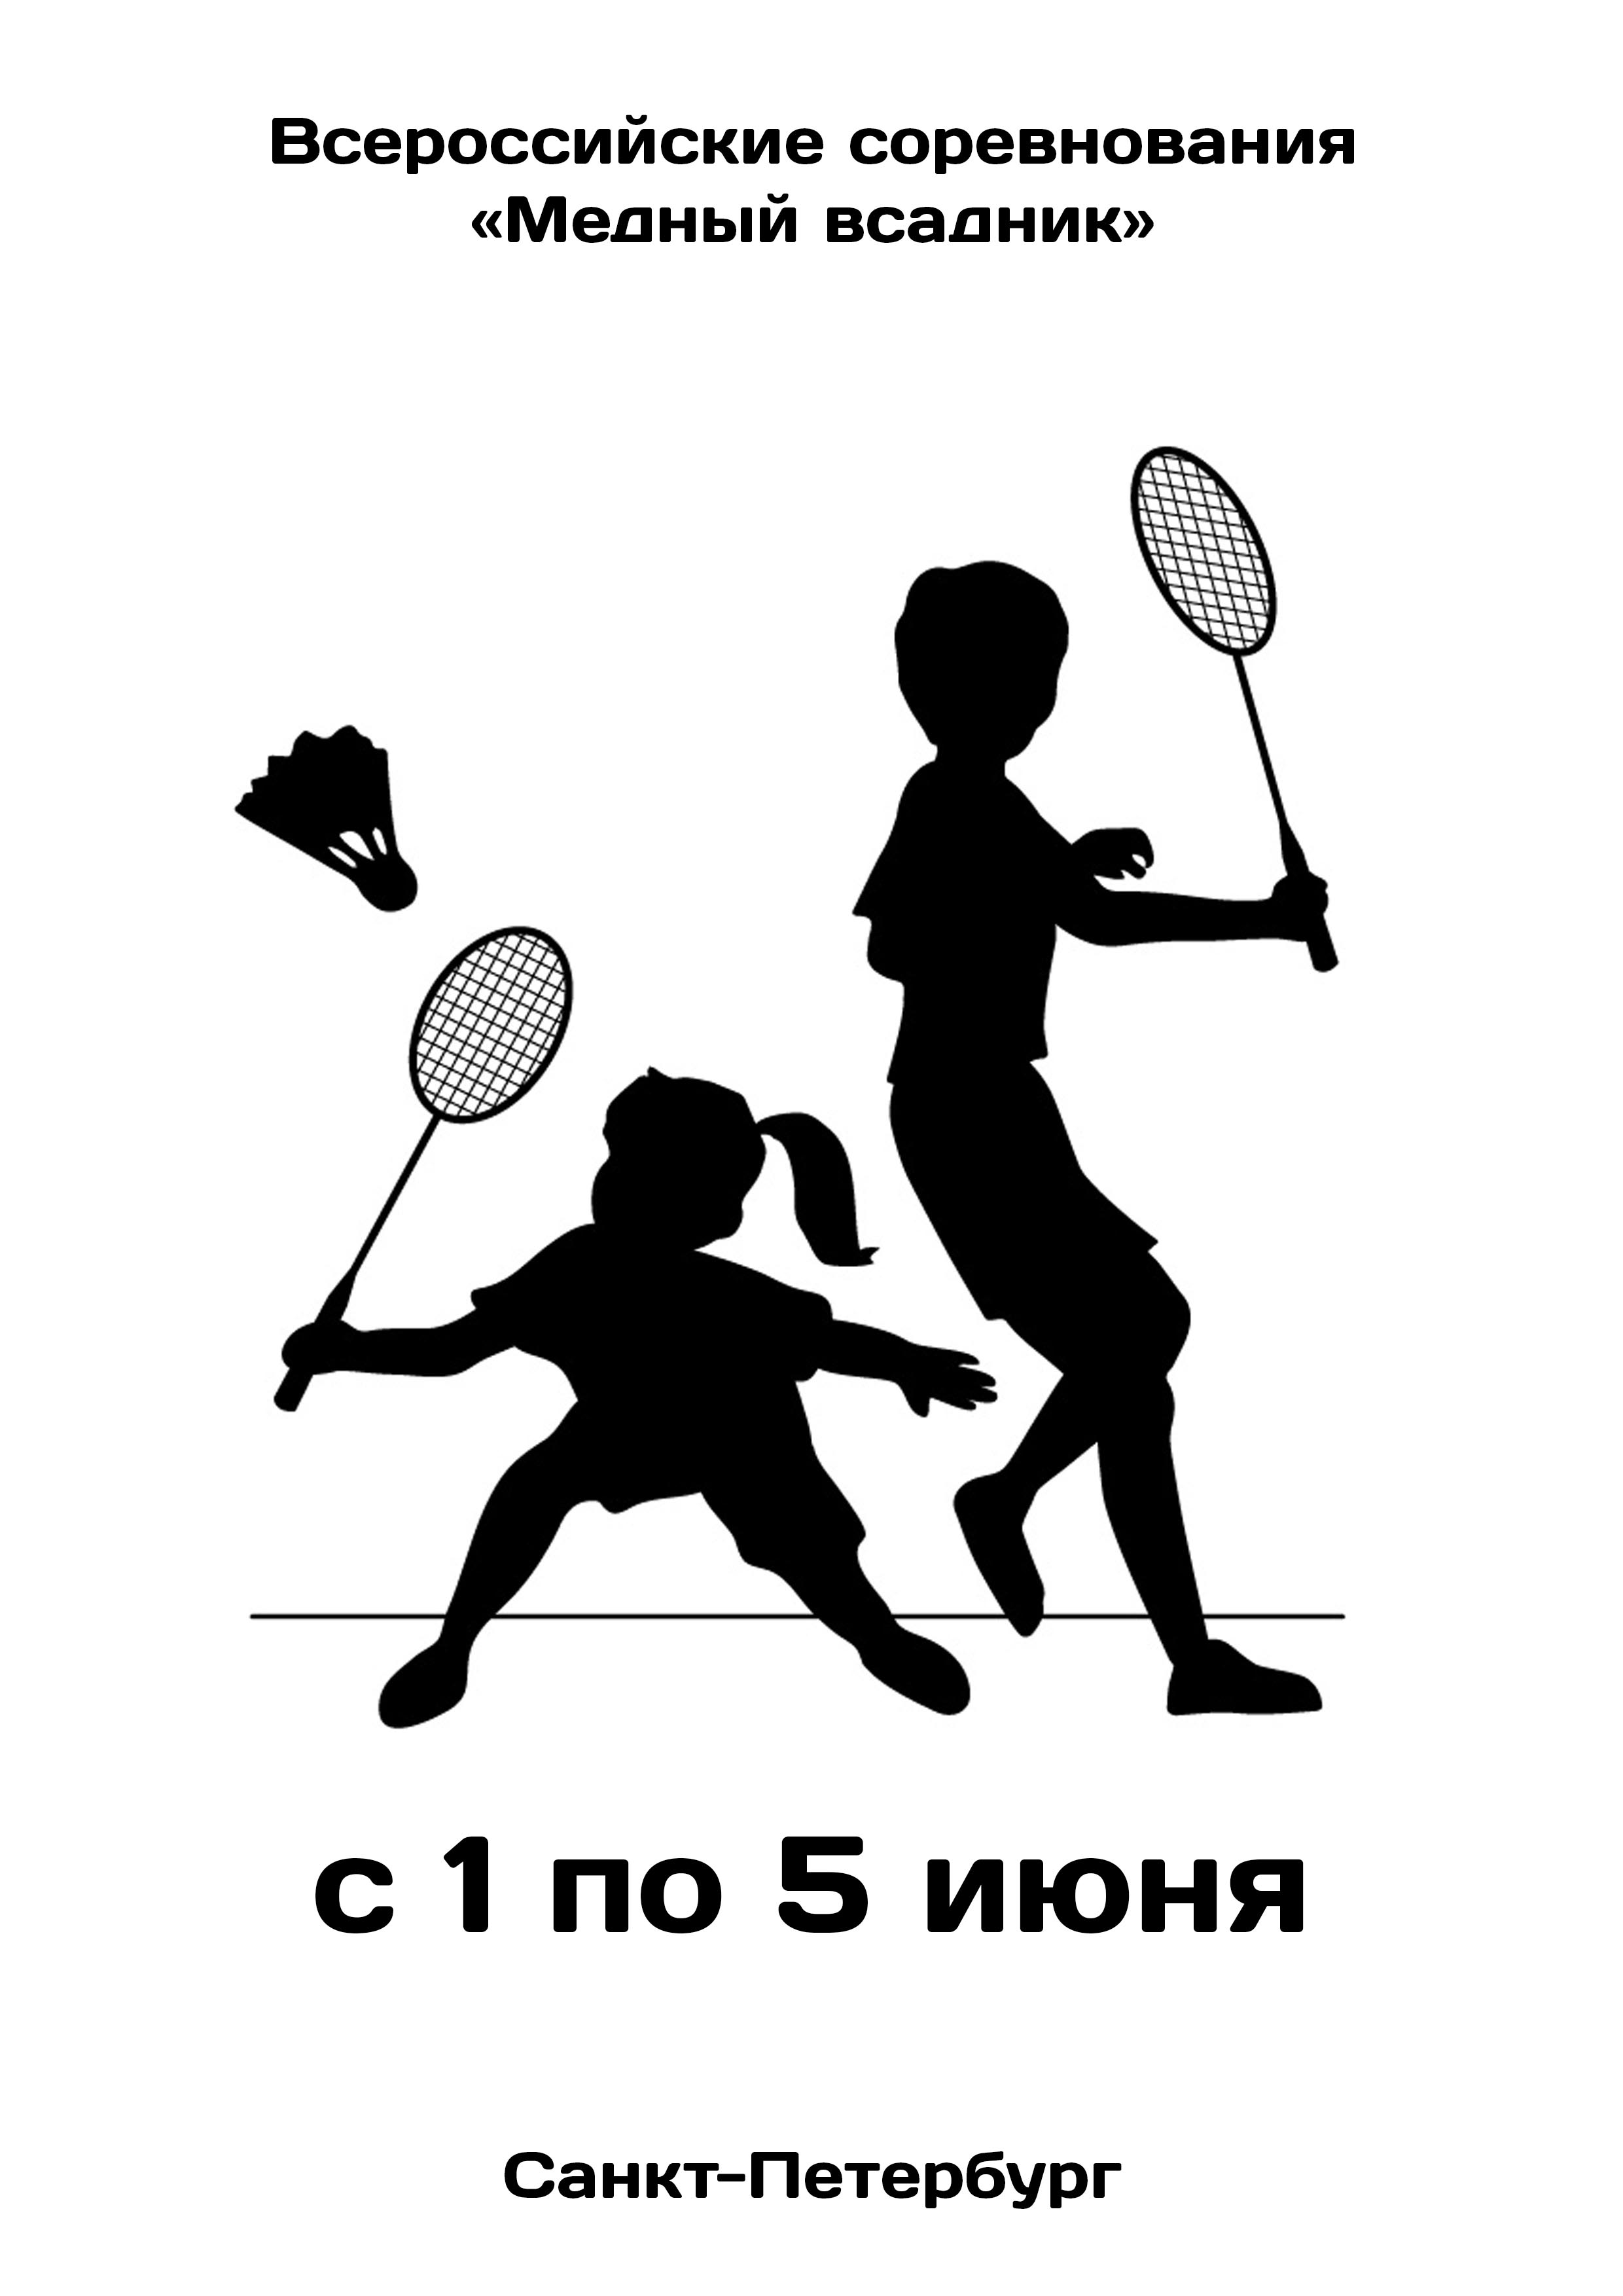 Всероссийские соревнования «Медный всадник»  по бадминтону 1  ខែមិថុនារបស់
 2023  នៅឆ្នាំ
 